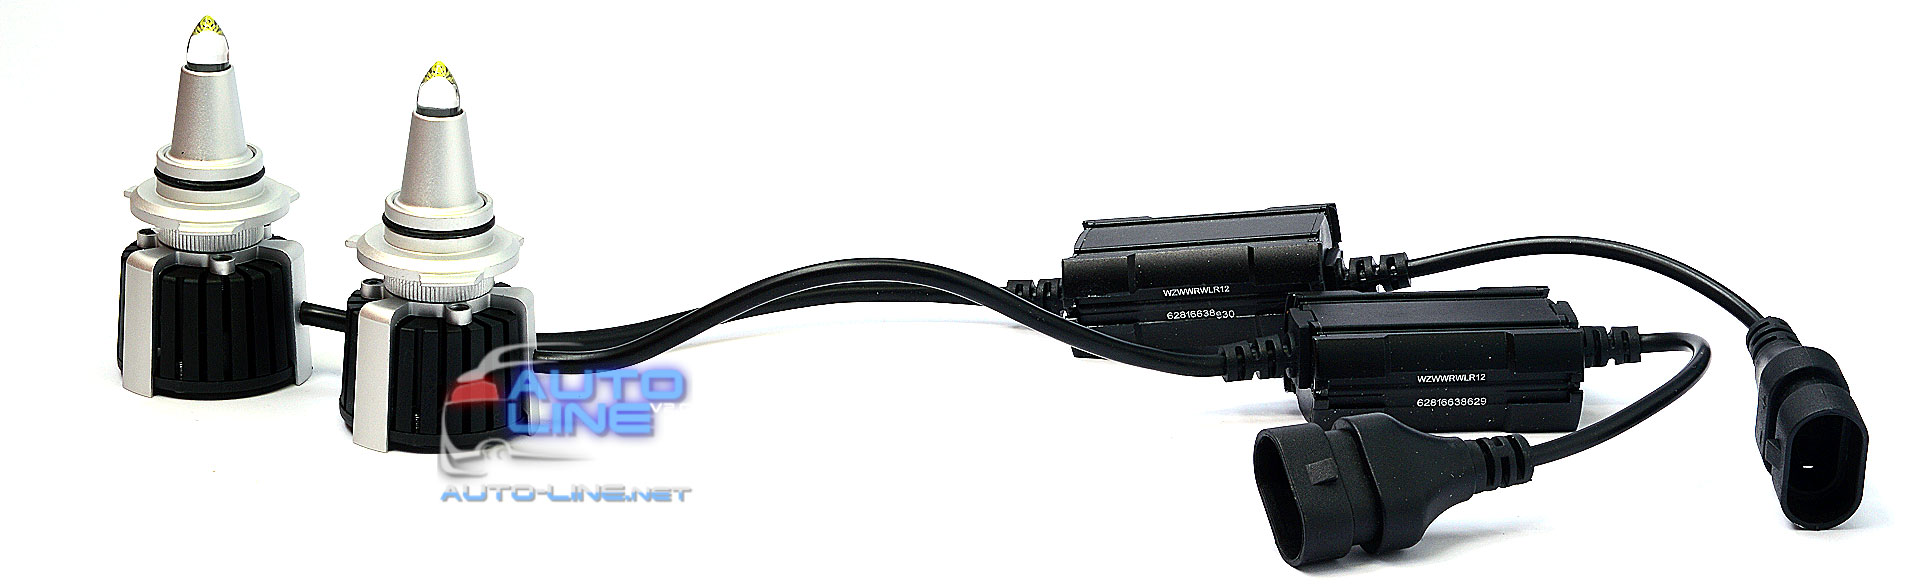 B-Power SL LED R10 9005/HB3 CAN 6000K 25000Lm 120W — мощные 3D лазерные лампы 9005/HB3 для линзованной оптики, с углом свечения 360 градусов, 6000K